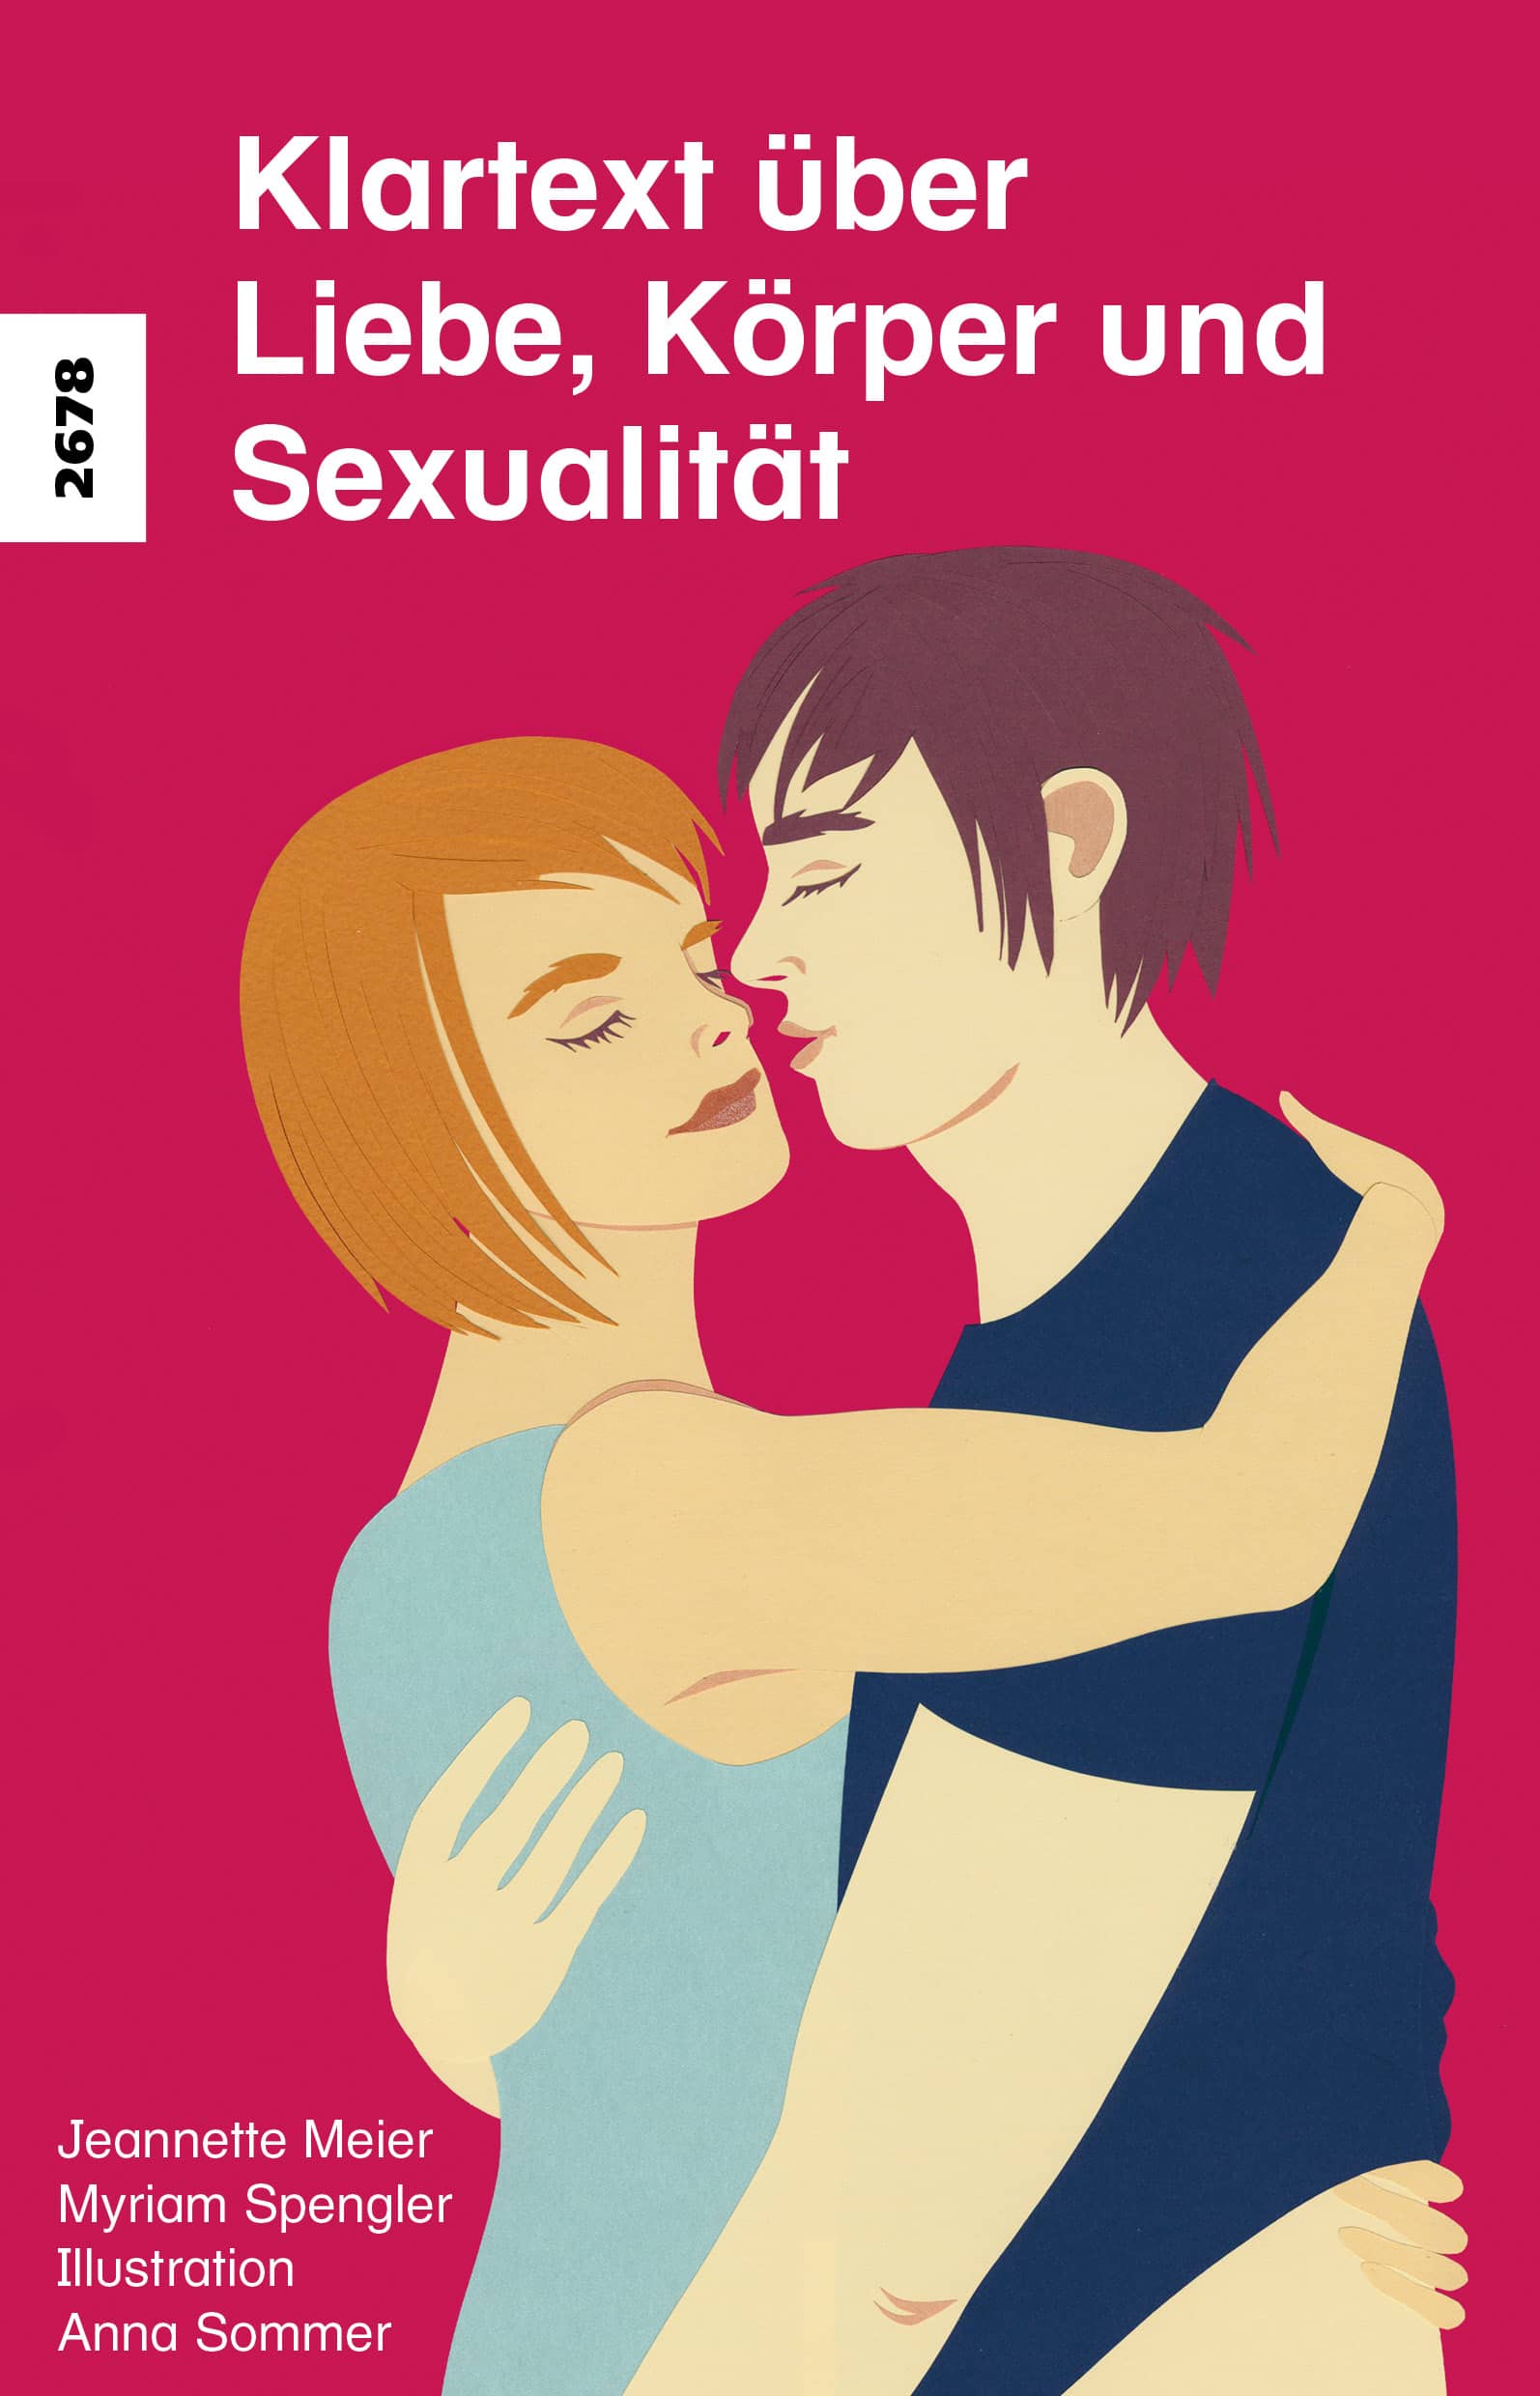 Klartext ueber Liebe, Koerper und Sexualitaet, ein Buch von Myriam Spengler/Jeannette Meier, Illustration Anna Sommer, SJW